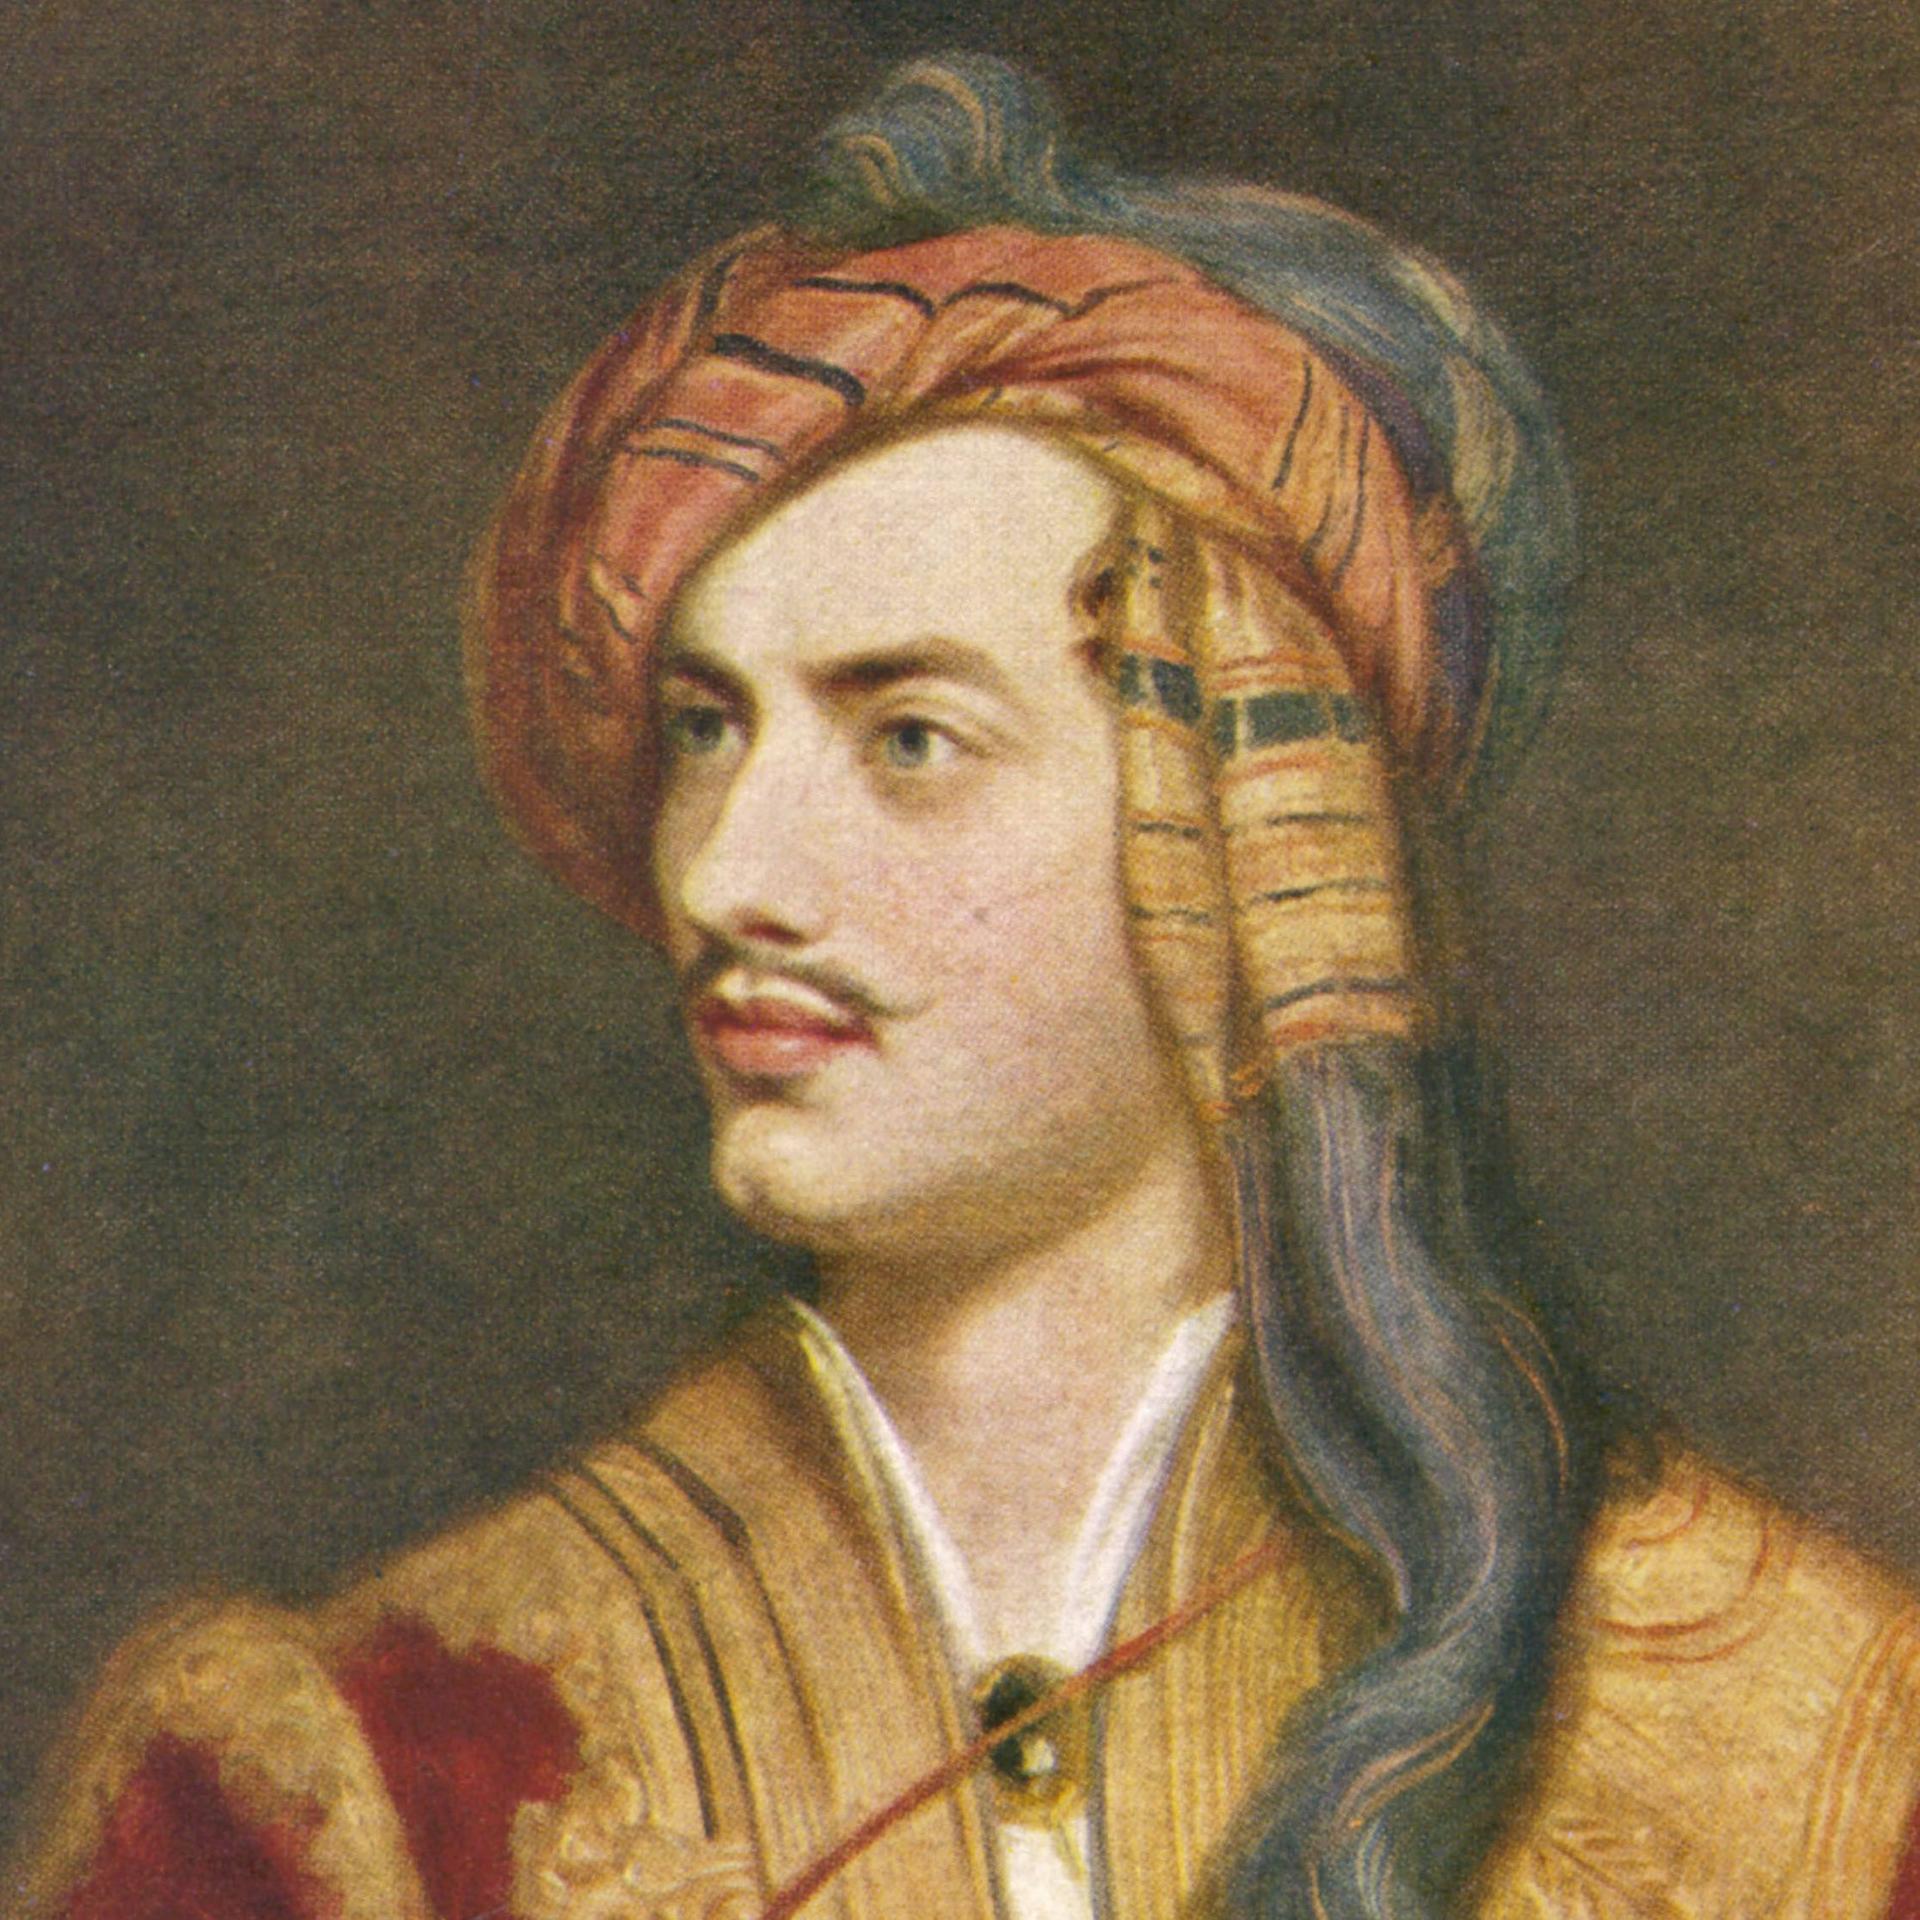 Lord Byron in Venedig – Pilger, Popstar, Poet